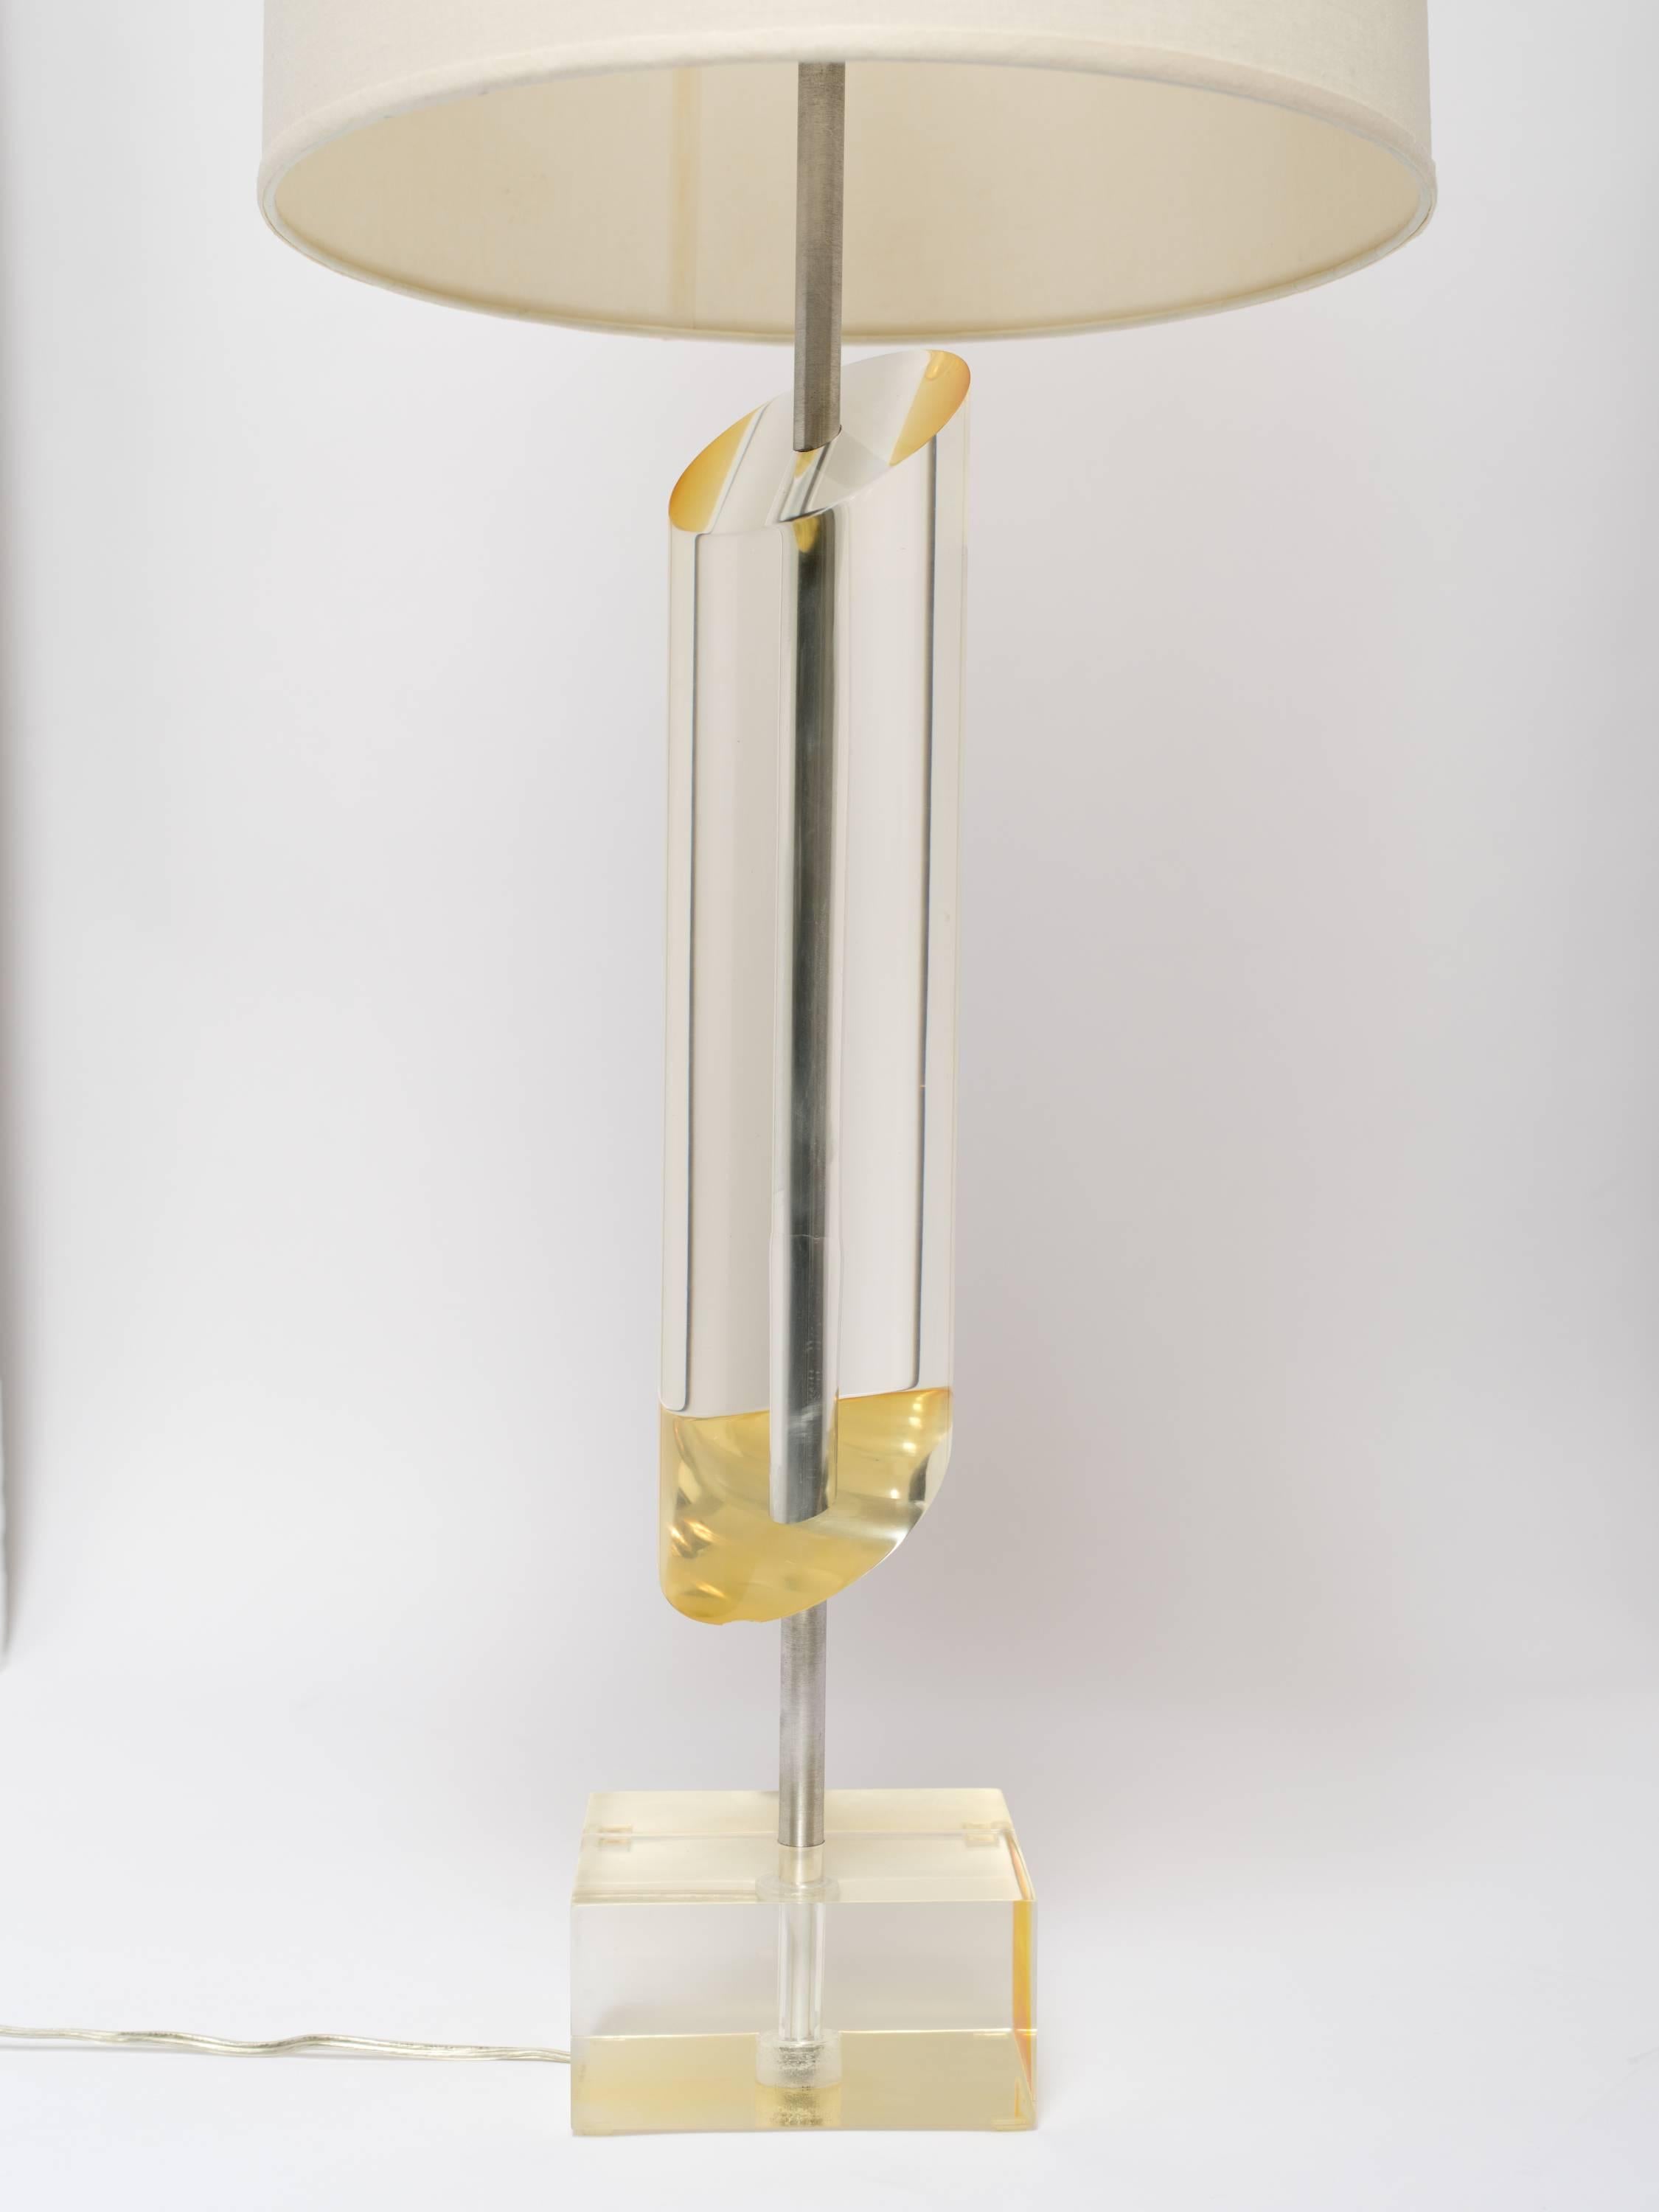 Lampe sculpturale moderne du milieu du siècle avec un design de colonne inclinée. La lampe est composée d'un cylindre en Lucite solide au design asymétrique et d'une base en Lucite lourde. La Lucite a des reflets jaune d'or ou ambre et est équipée